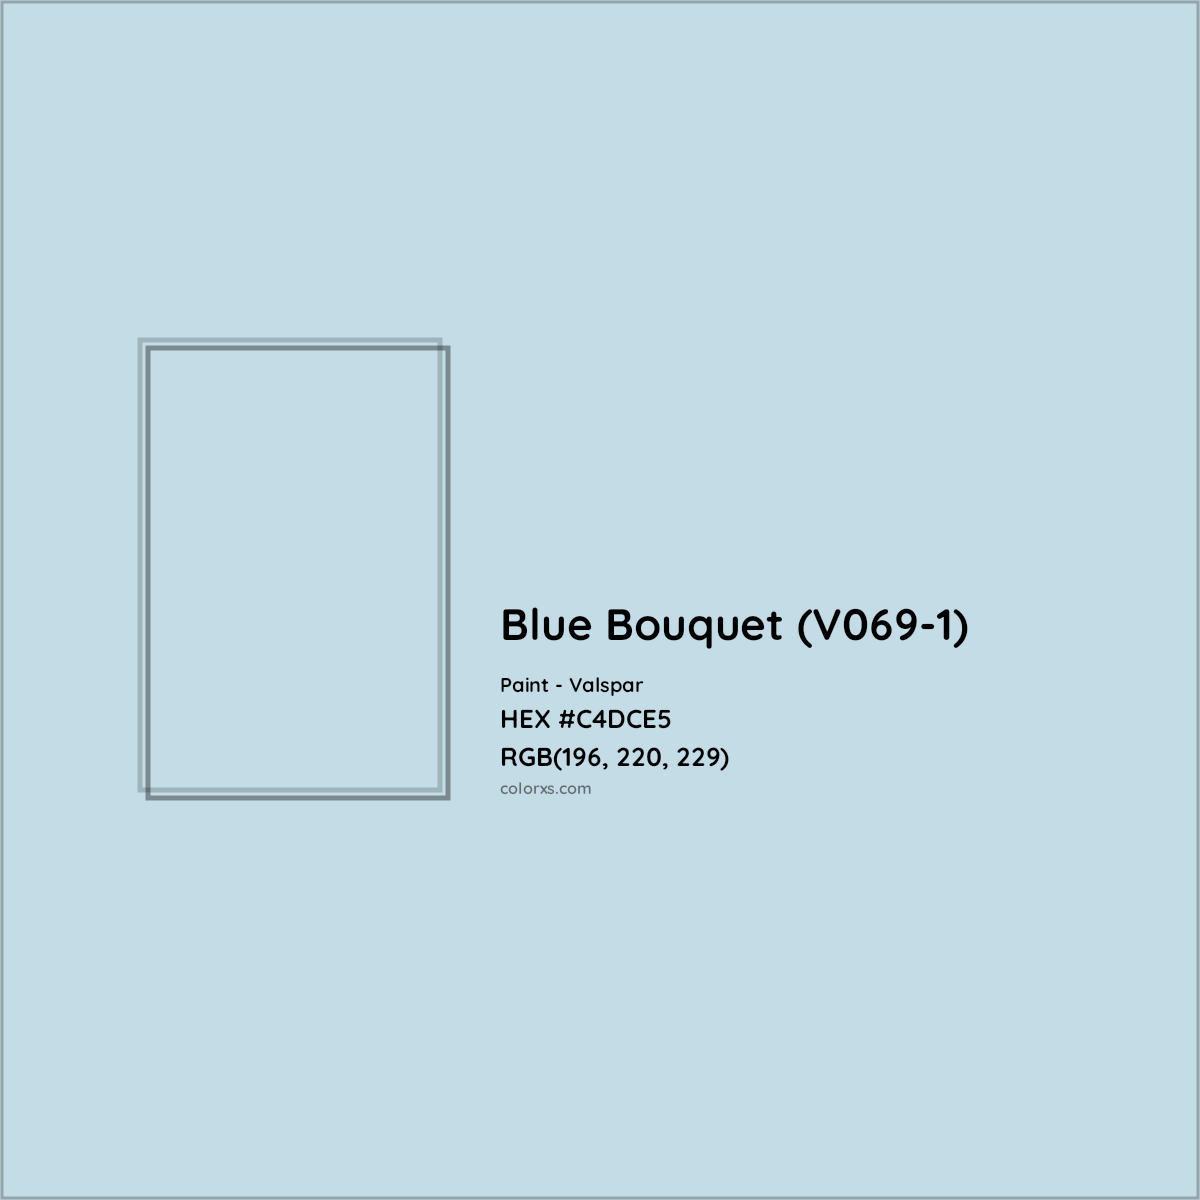 HEX #C4DCE5 Blue Bouquet (V069-1) Paint Valspar - Color Code